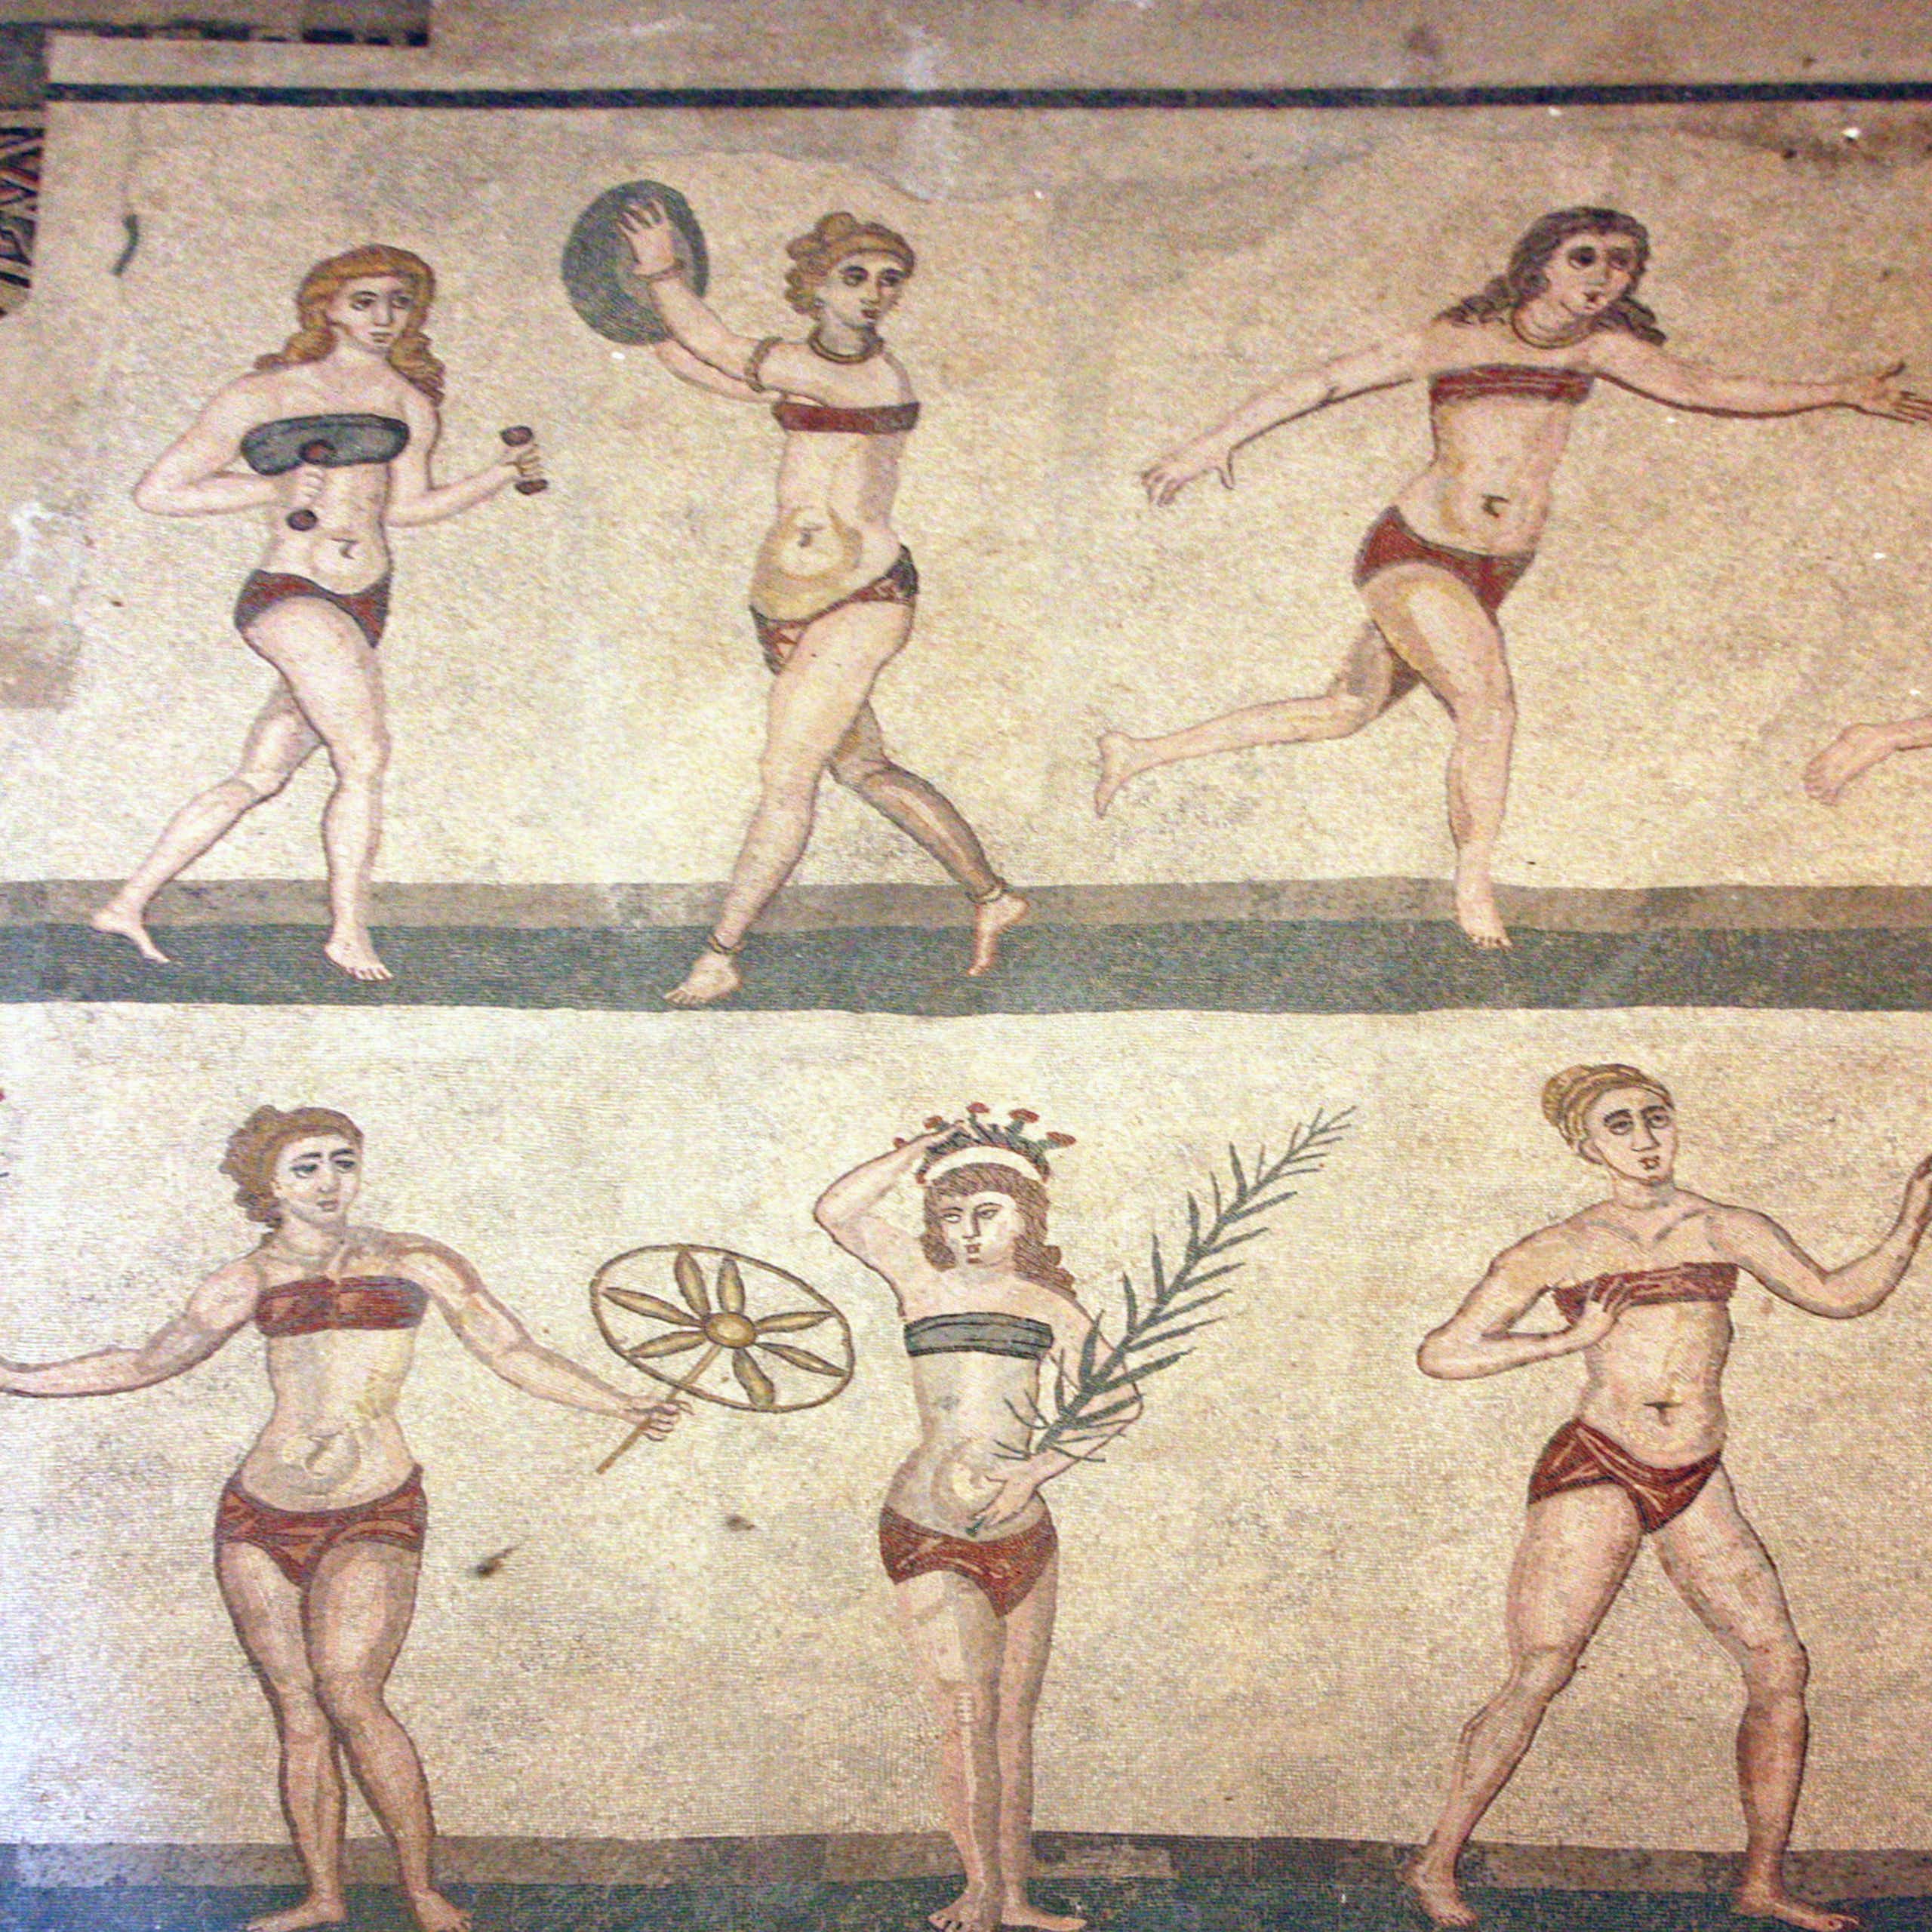 A mosaic of women playing sports